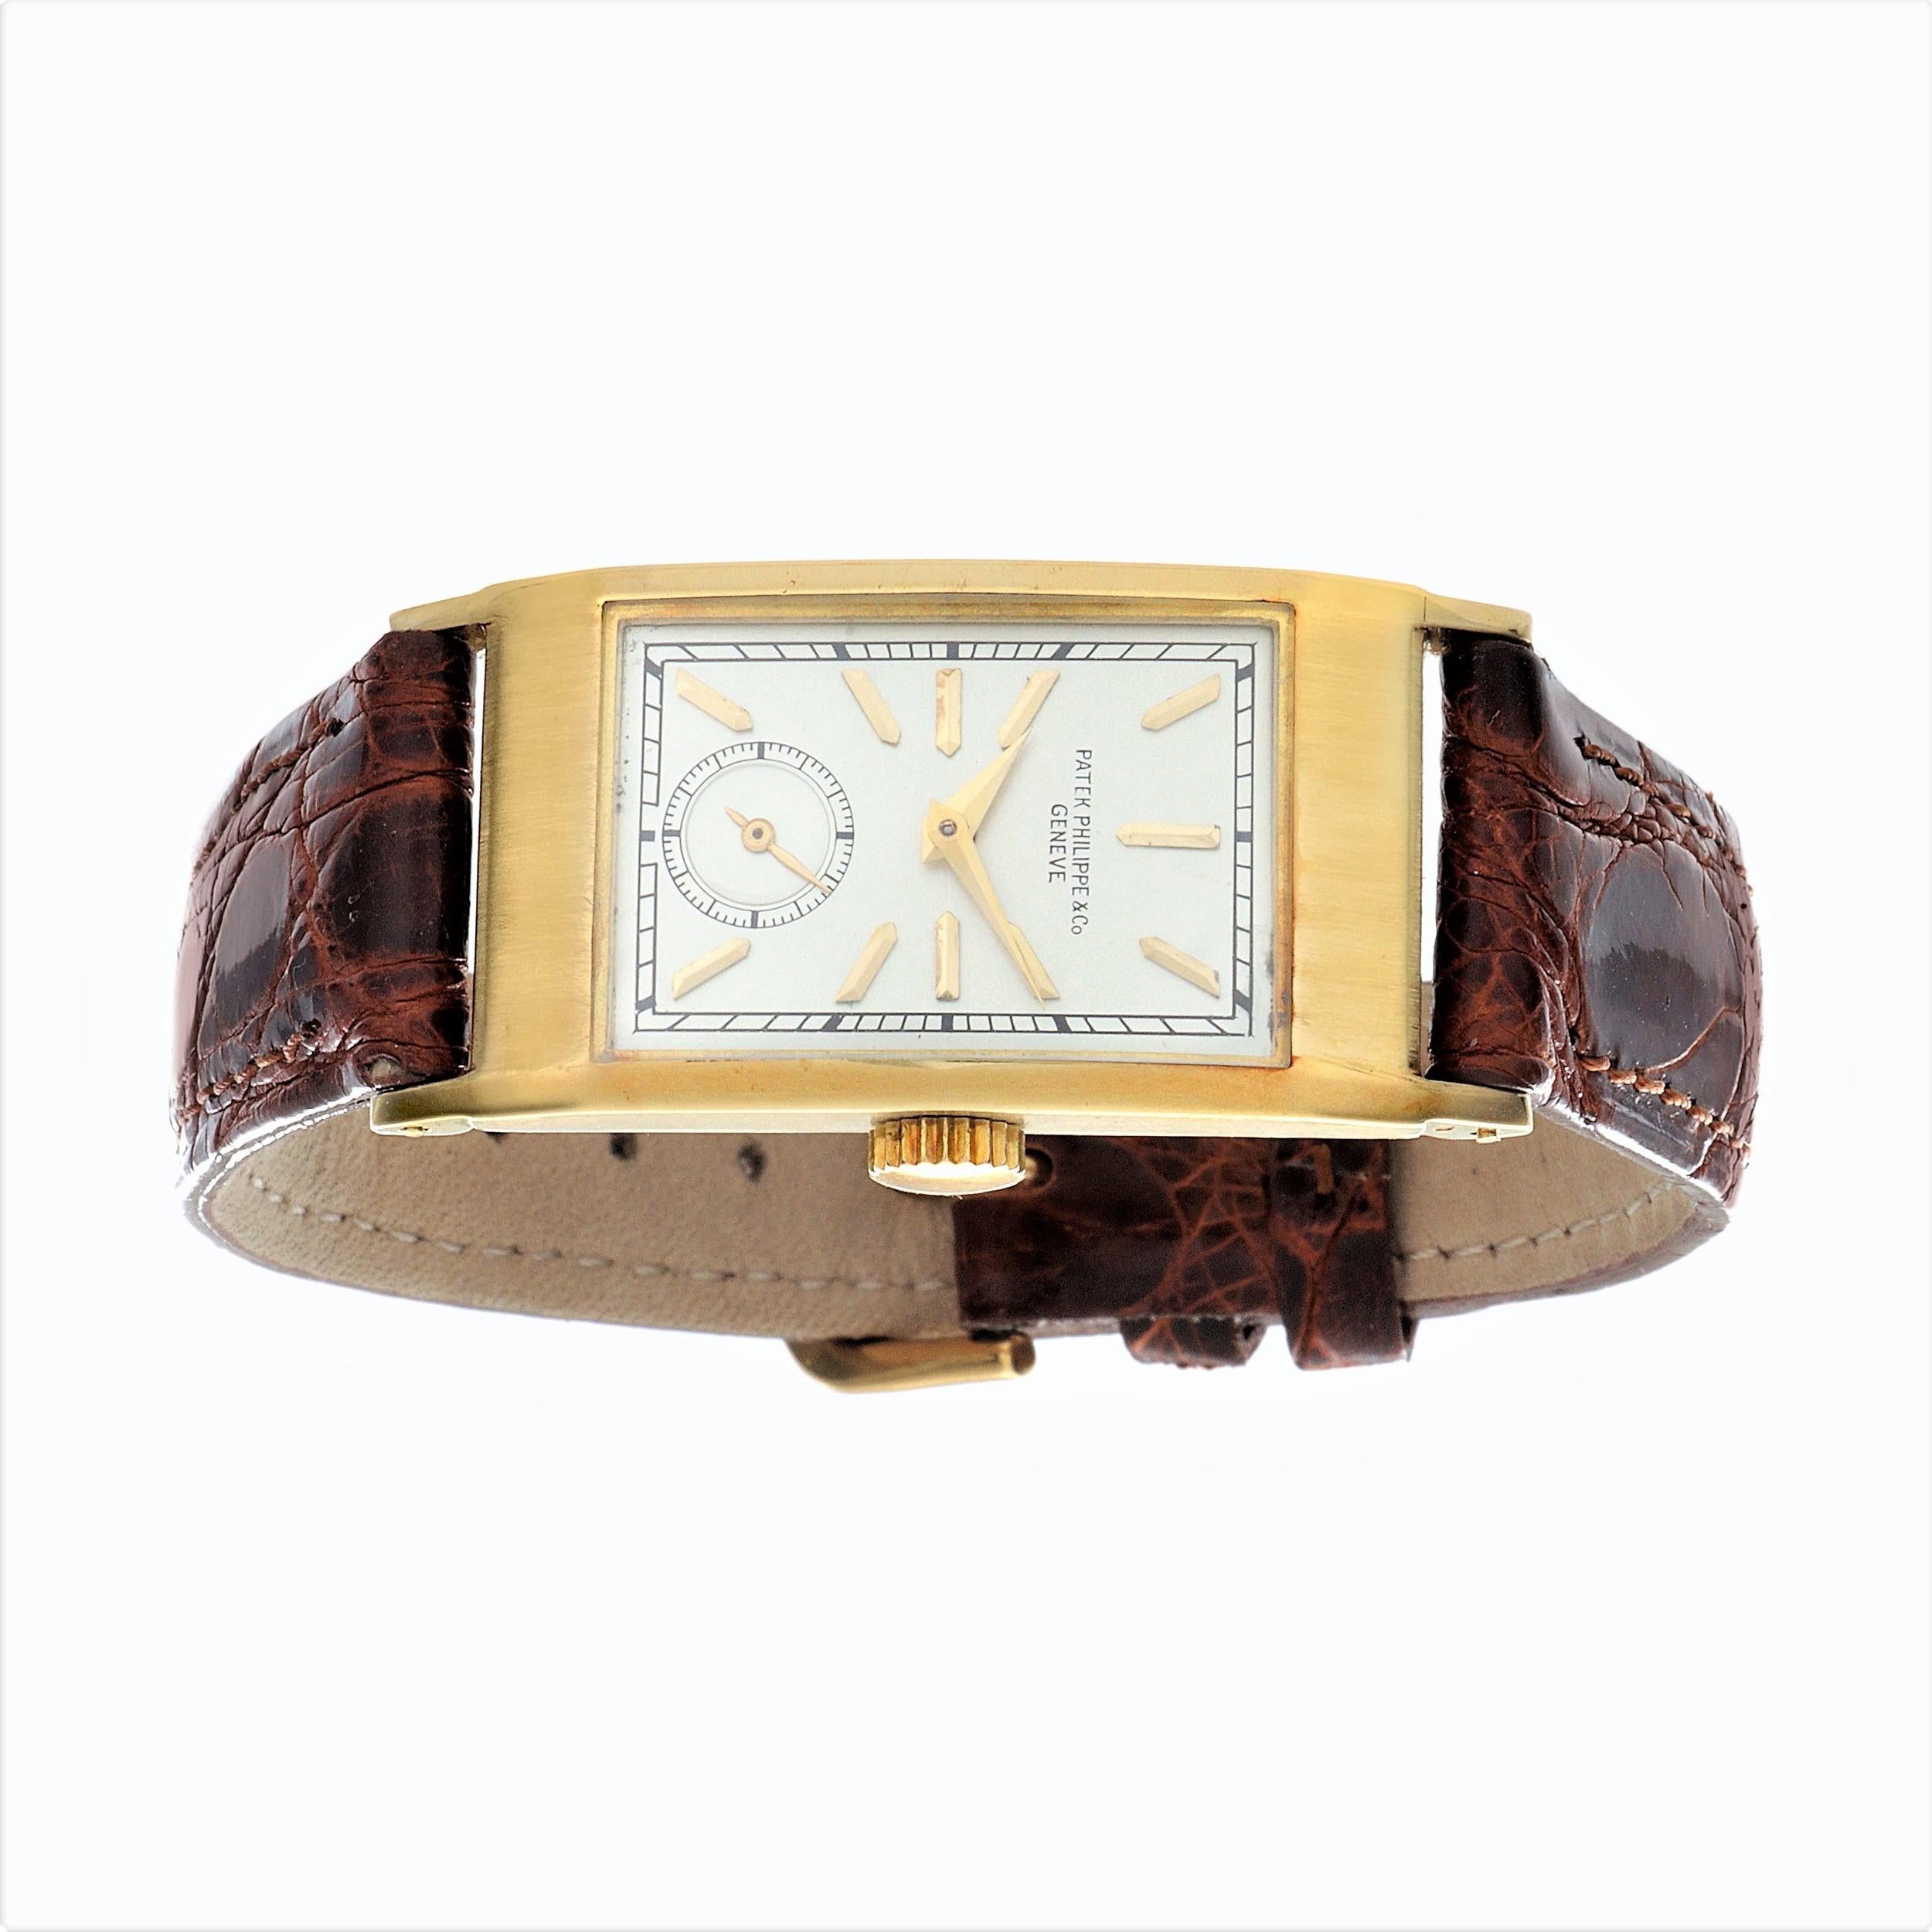 Introduction :
Montre Patek Philippe 425J Tegolino Art Deco, mesurant 42,5 x 20,5.  La montre est équipée d'un mouvement de calibre 9